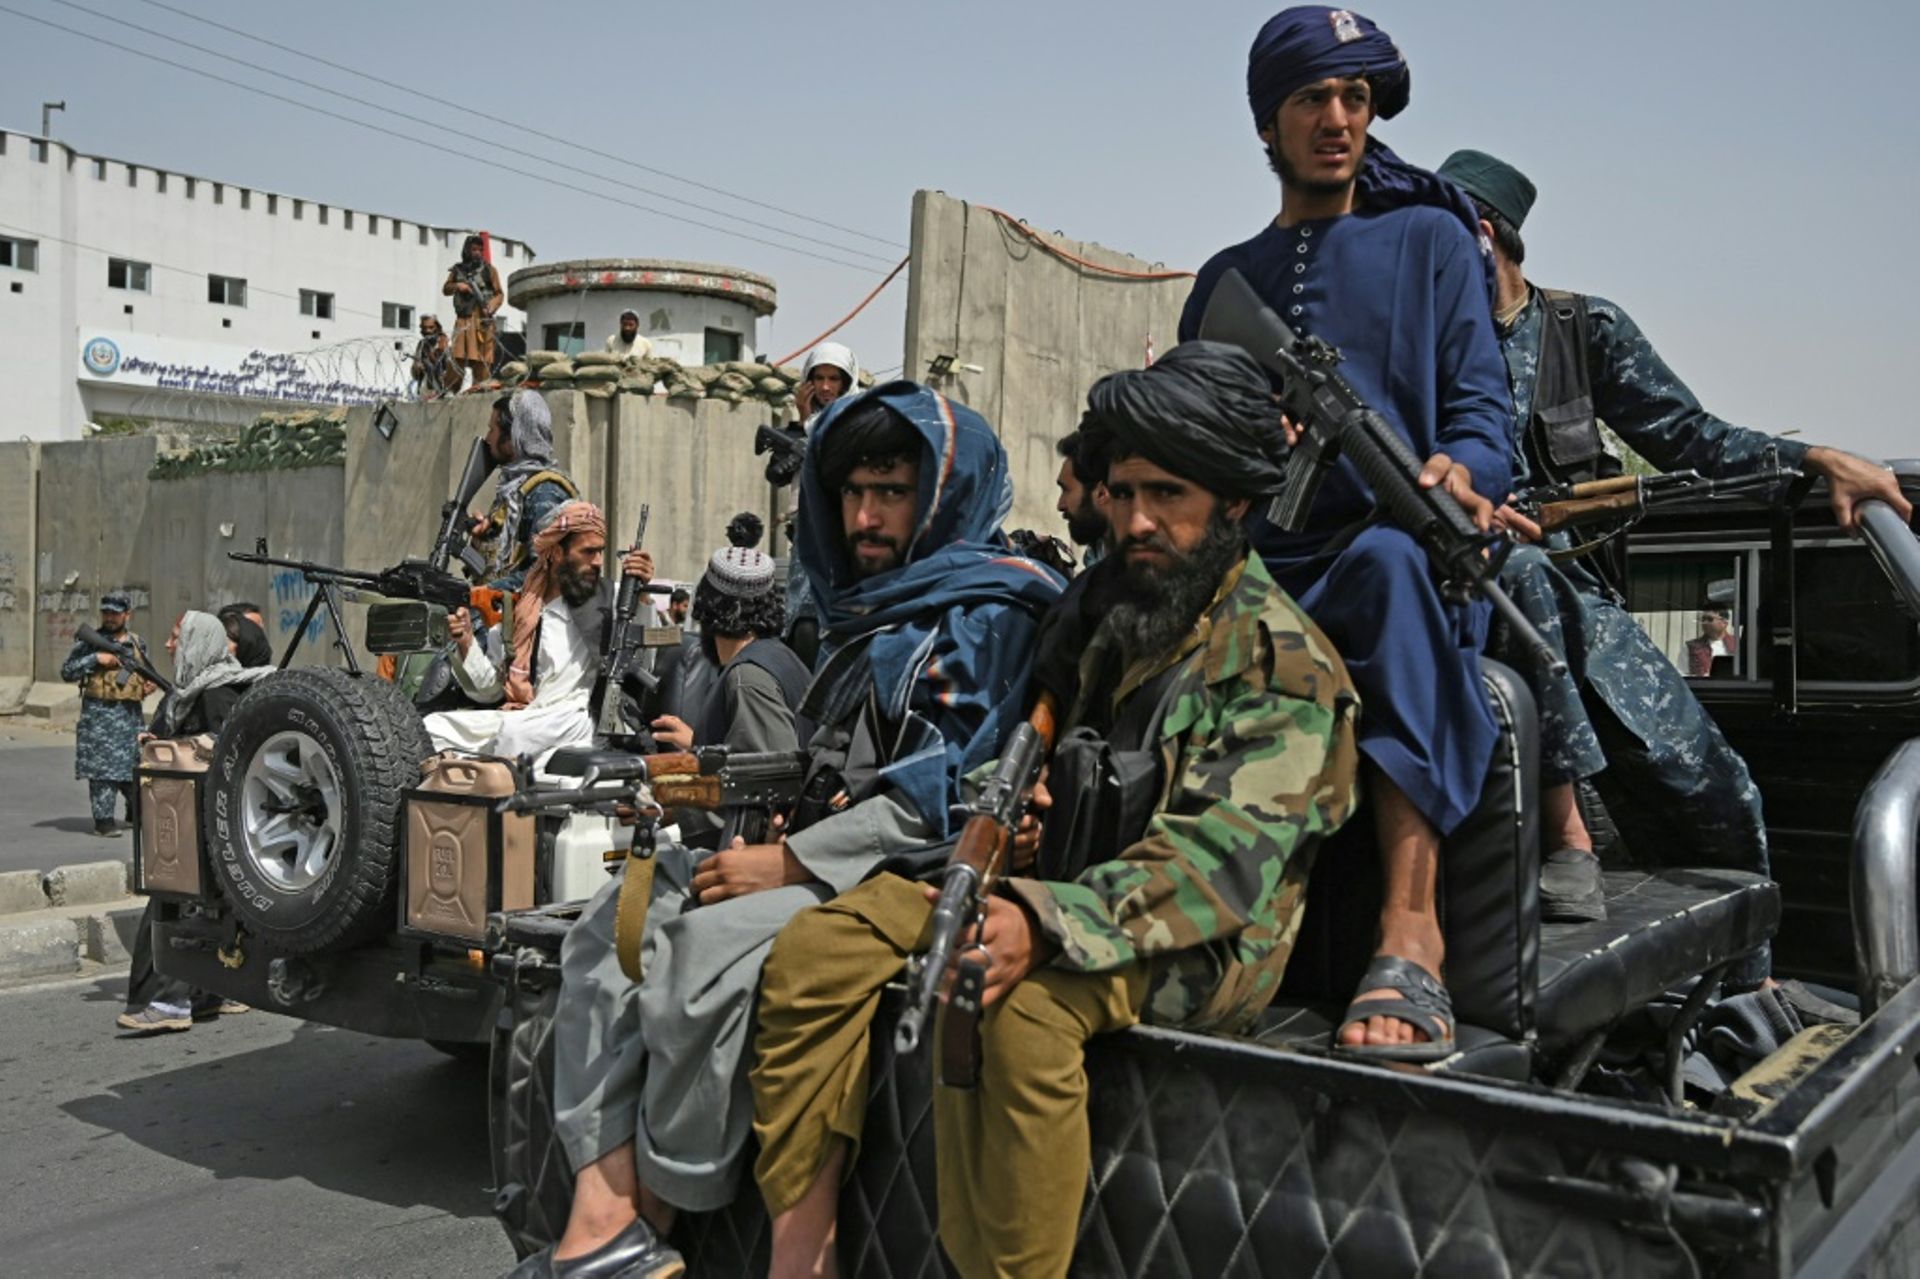 Des combattants talibans armés escortent des Afghanes en niqabs noirs lors d’un rassemblement pro-talibans devant l’Université Shaheed Rabbani, le 11 septembre 2021 à Kaboul